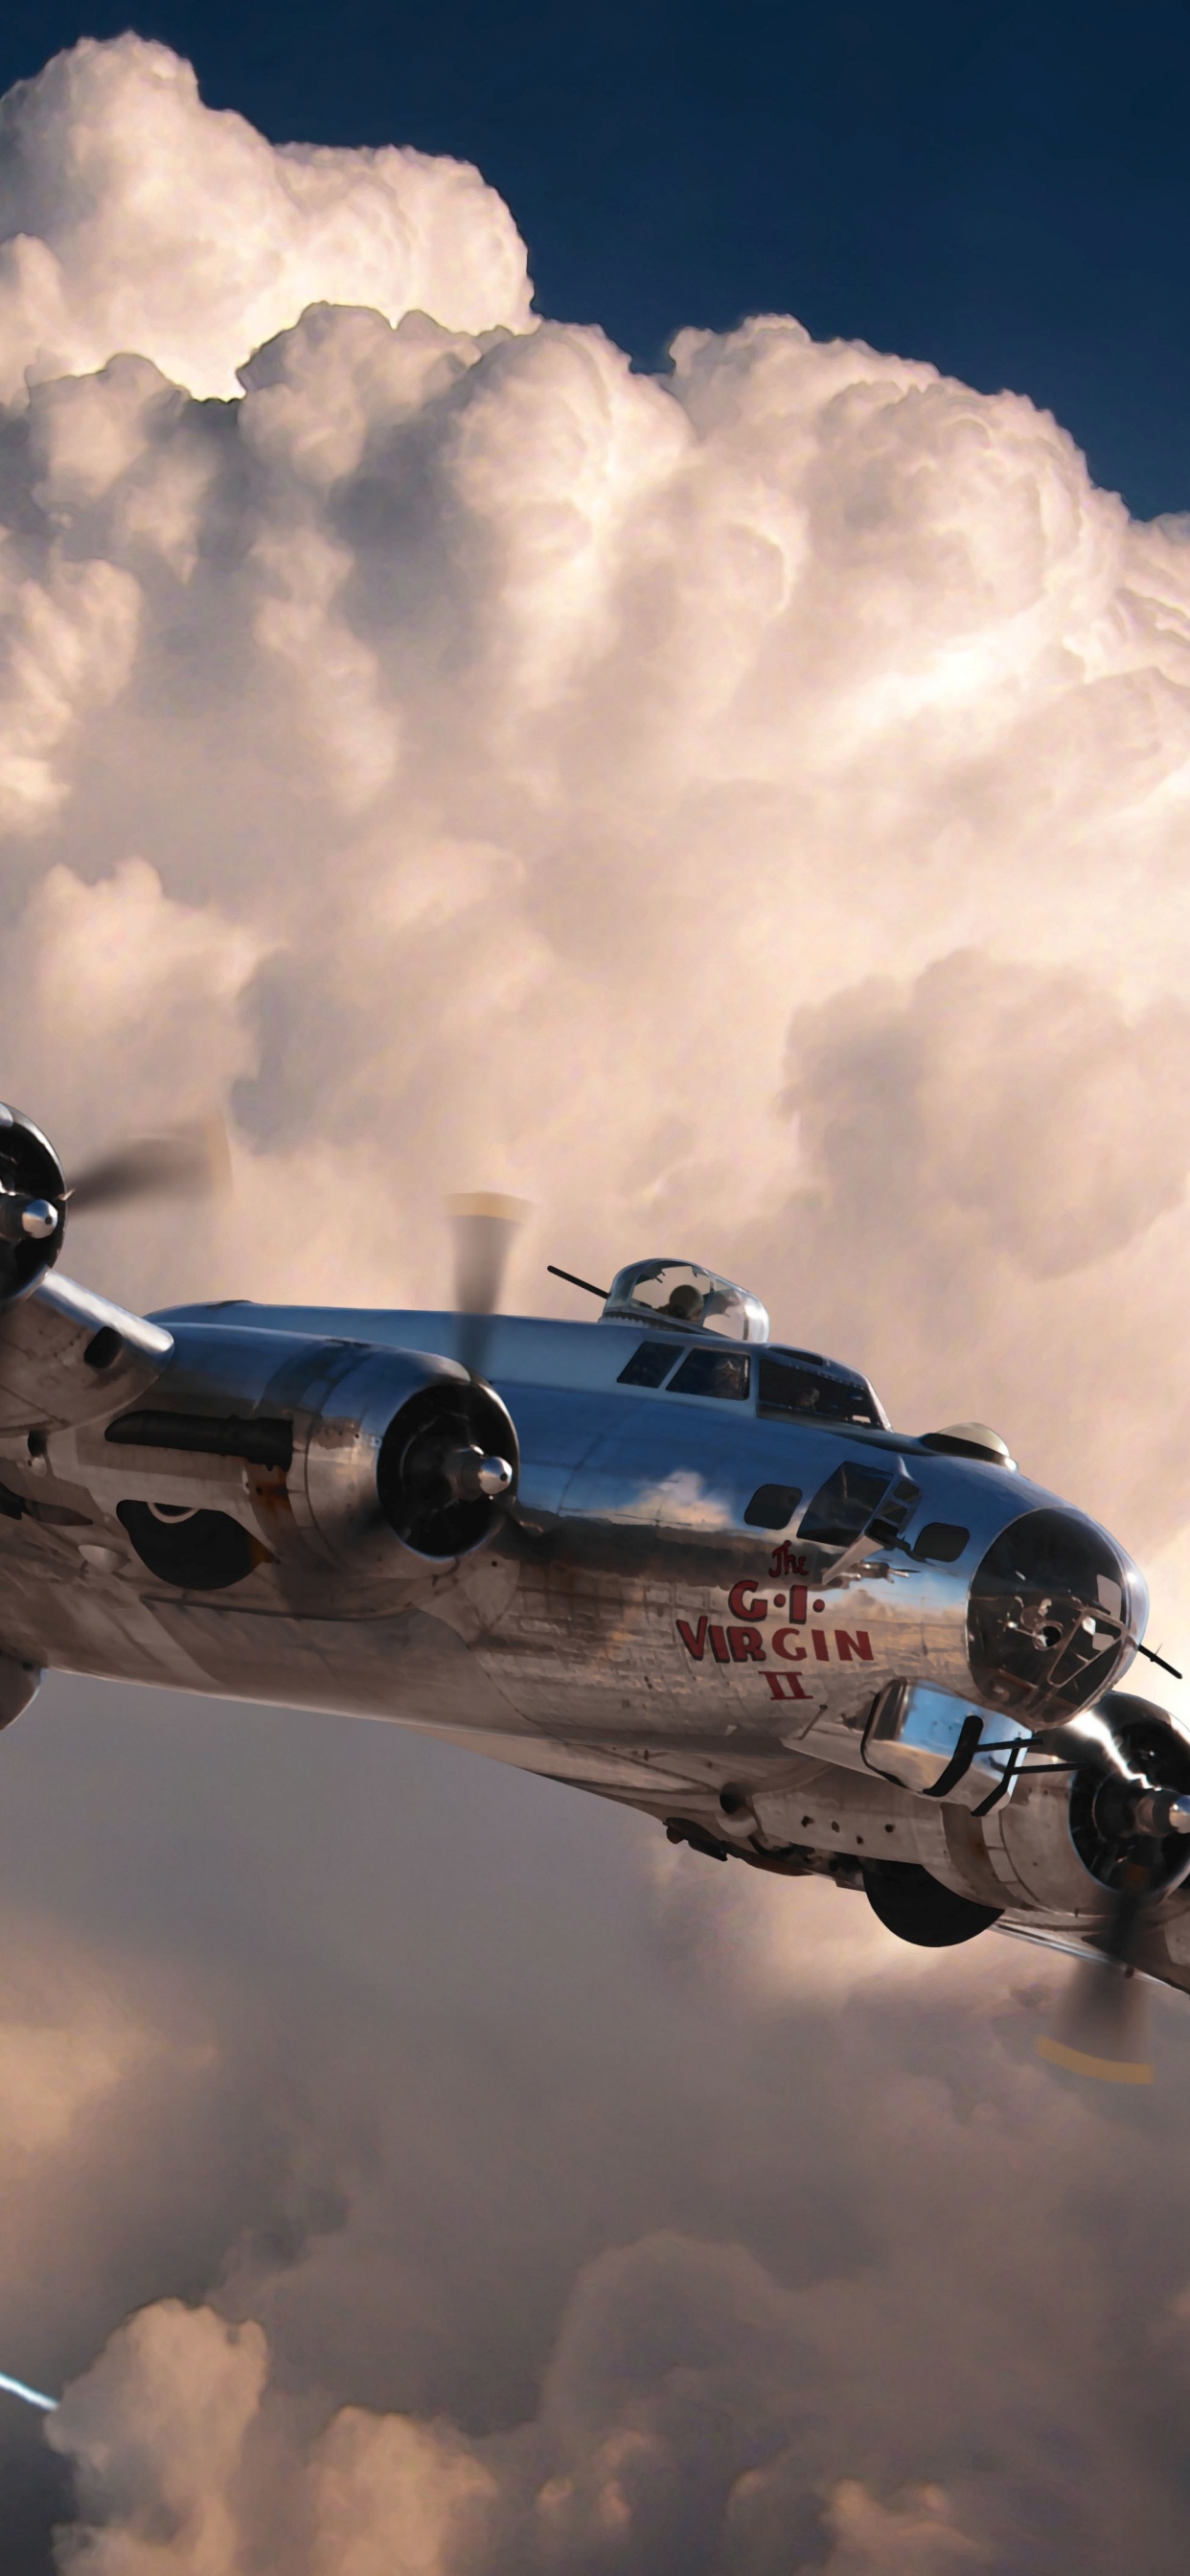 第二次世界大战, 世界大战, 波音公司b-17飞行堡垒, 波音公司B-29超级空中堡垒, 航空 壁纸 1242x2688 允许